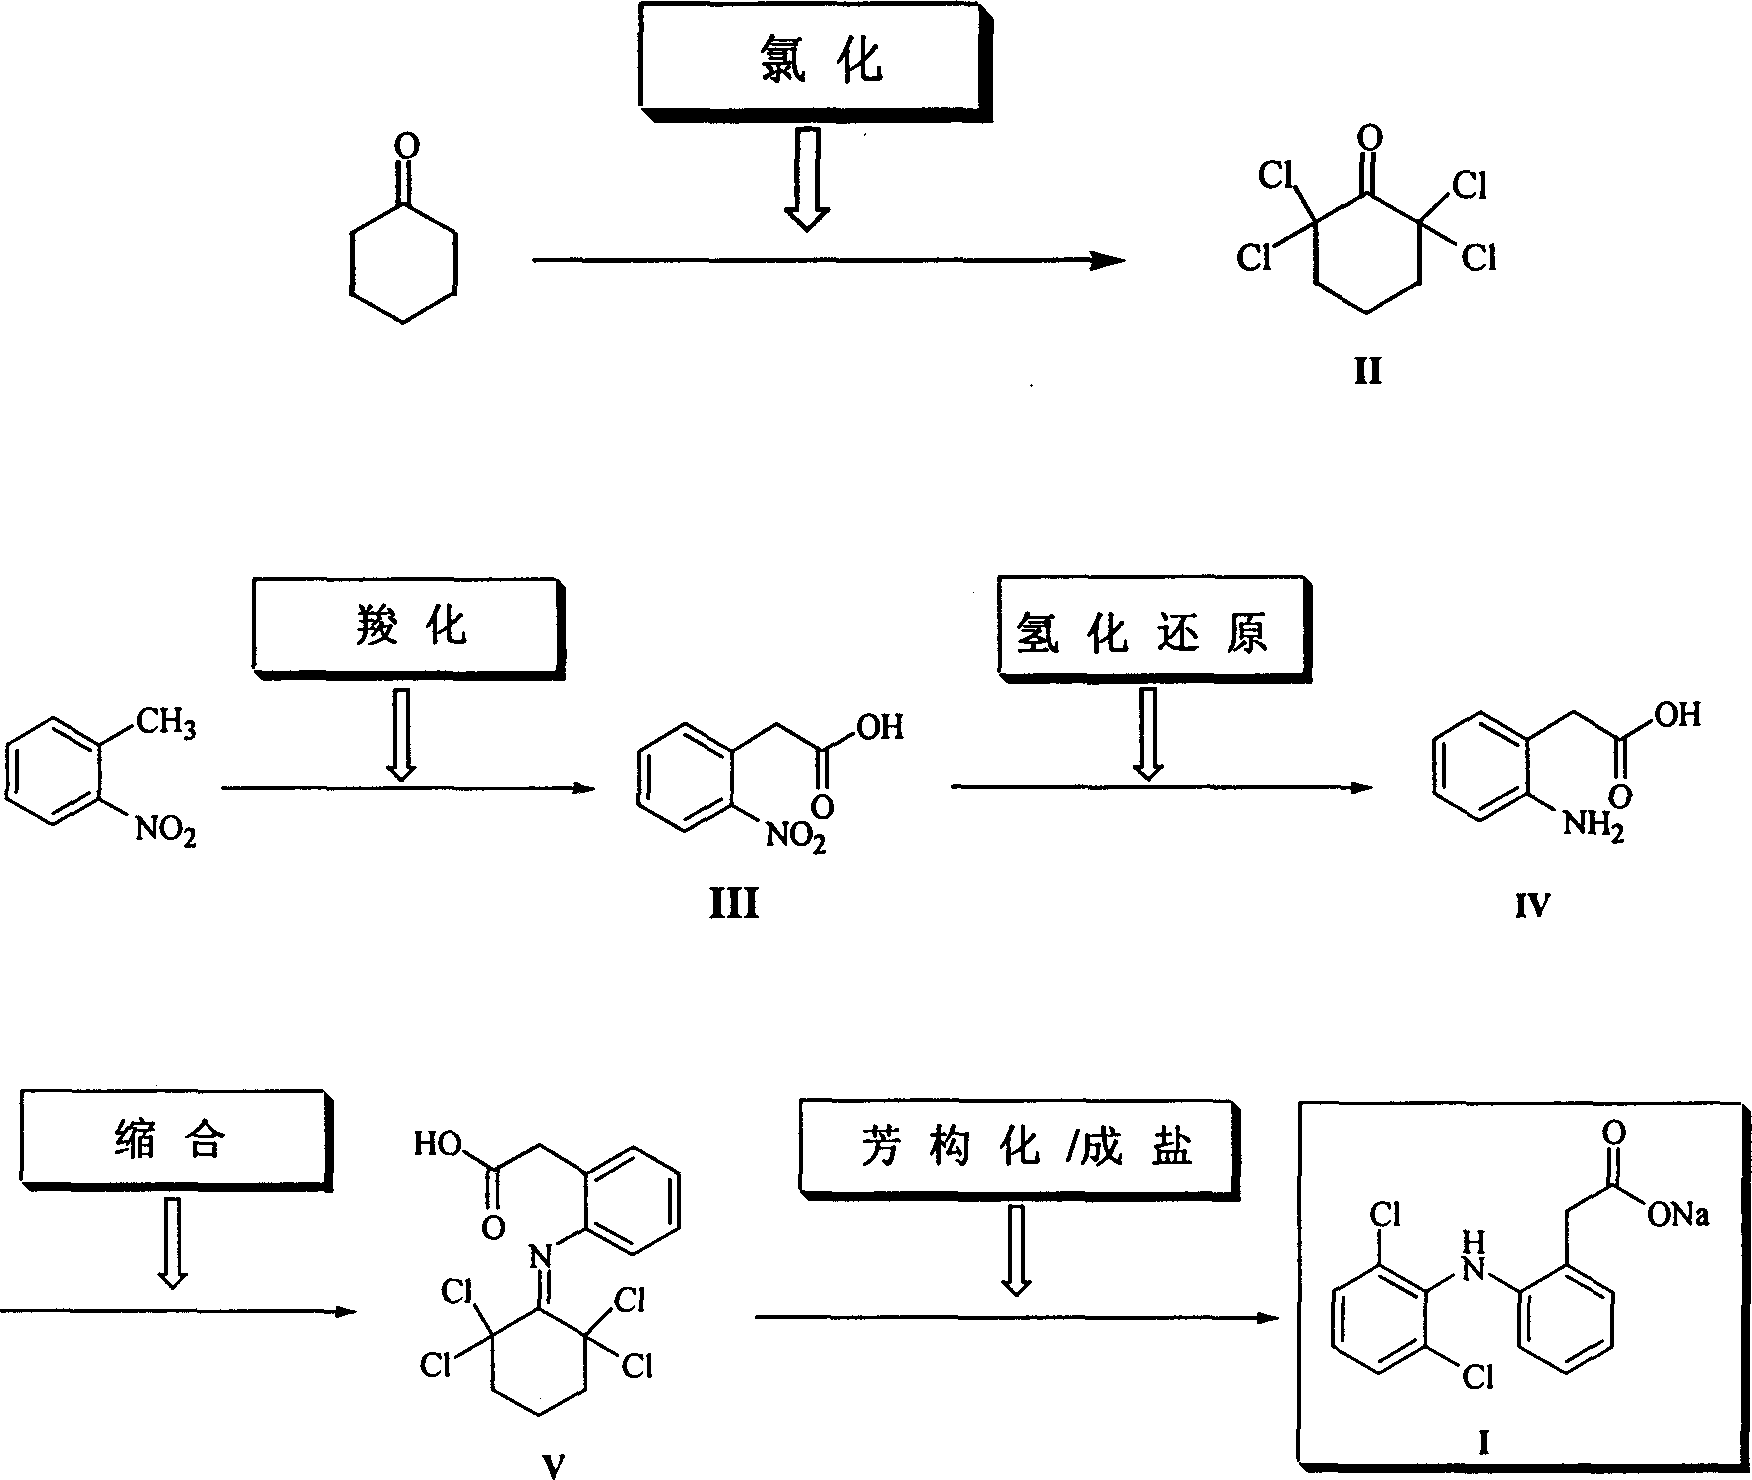 Method for synthesizing dichlofenac sodium